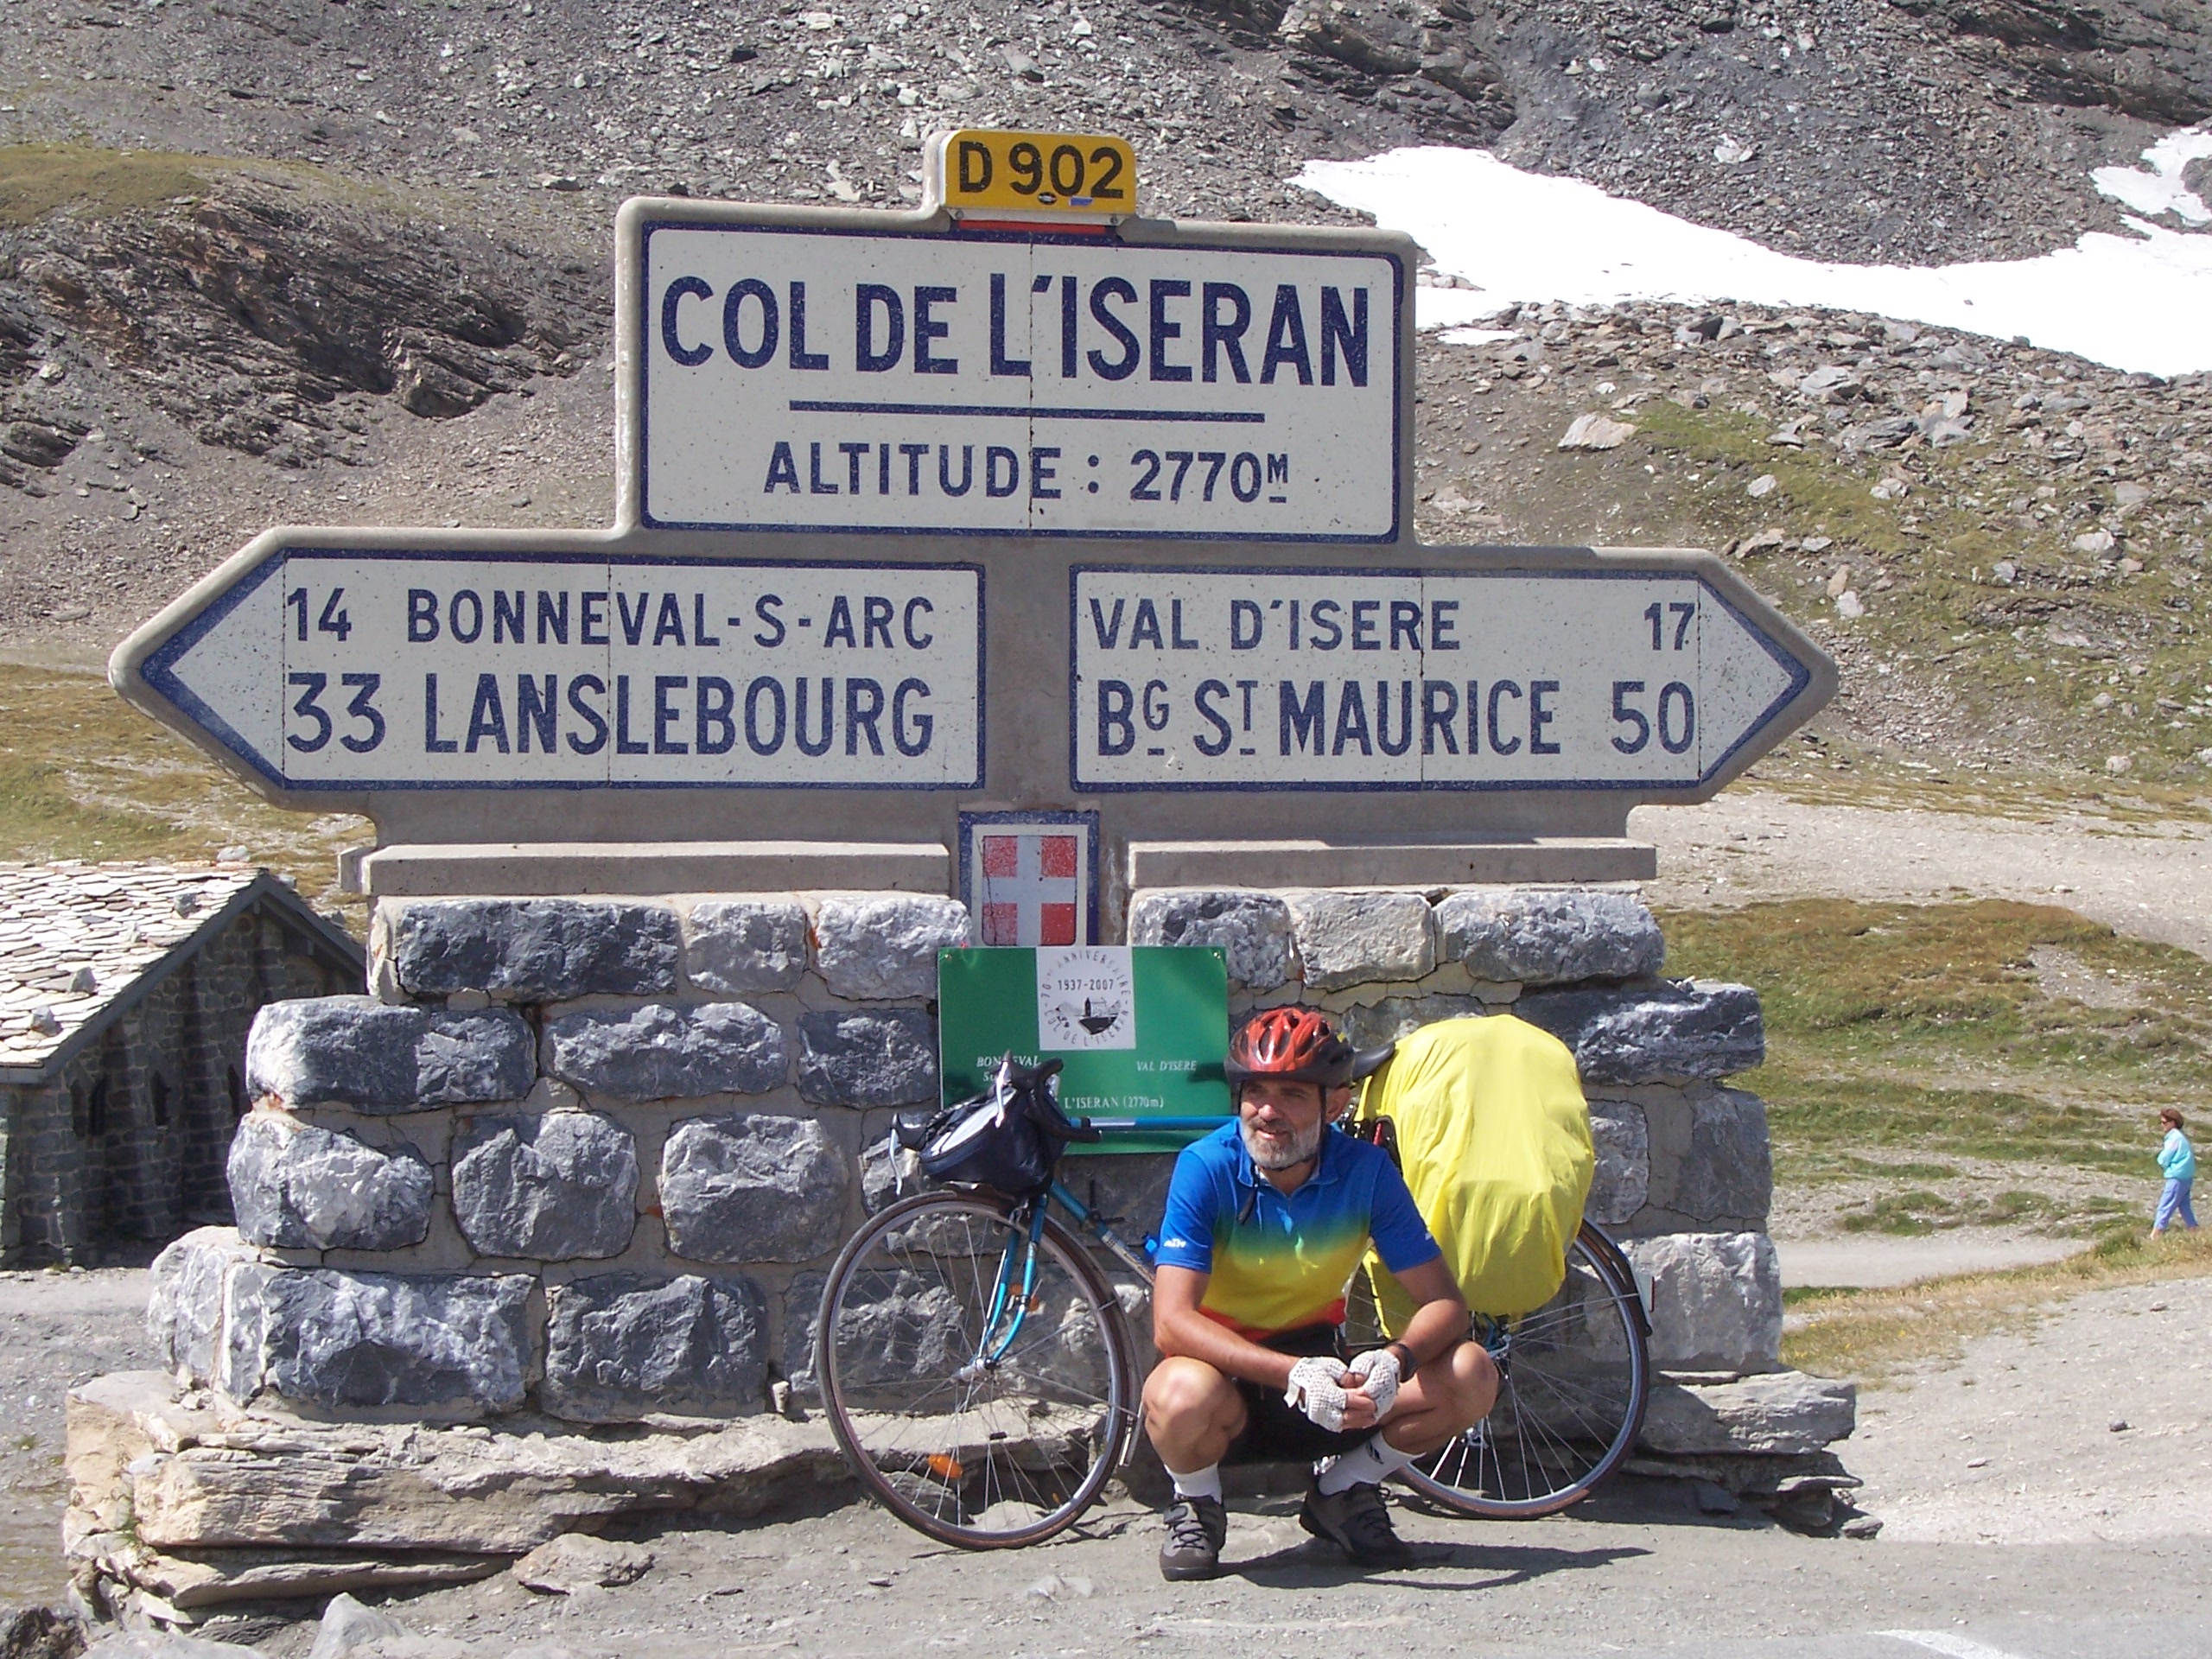 ColdelIzeran-2770, szukam kolarza do wspinaczki na górskie prze³êcze, podjazd na przelecz rowerem